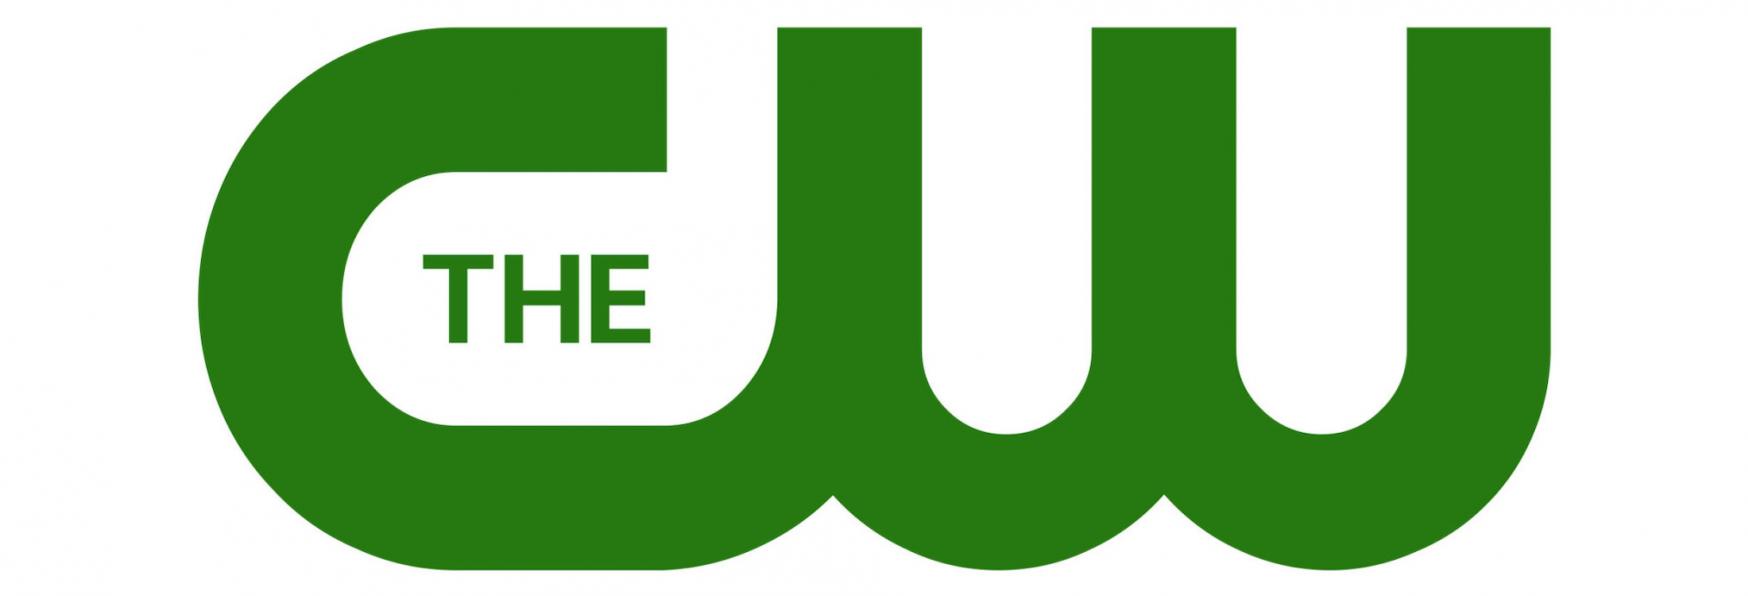 Annunciata la Data di Uscita di Superman & Lois e di moltissime altre Serie TV e Stagioni targate The CW